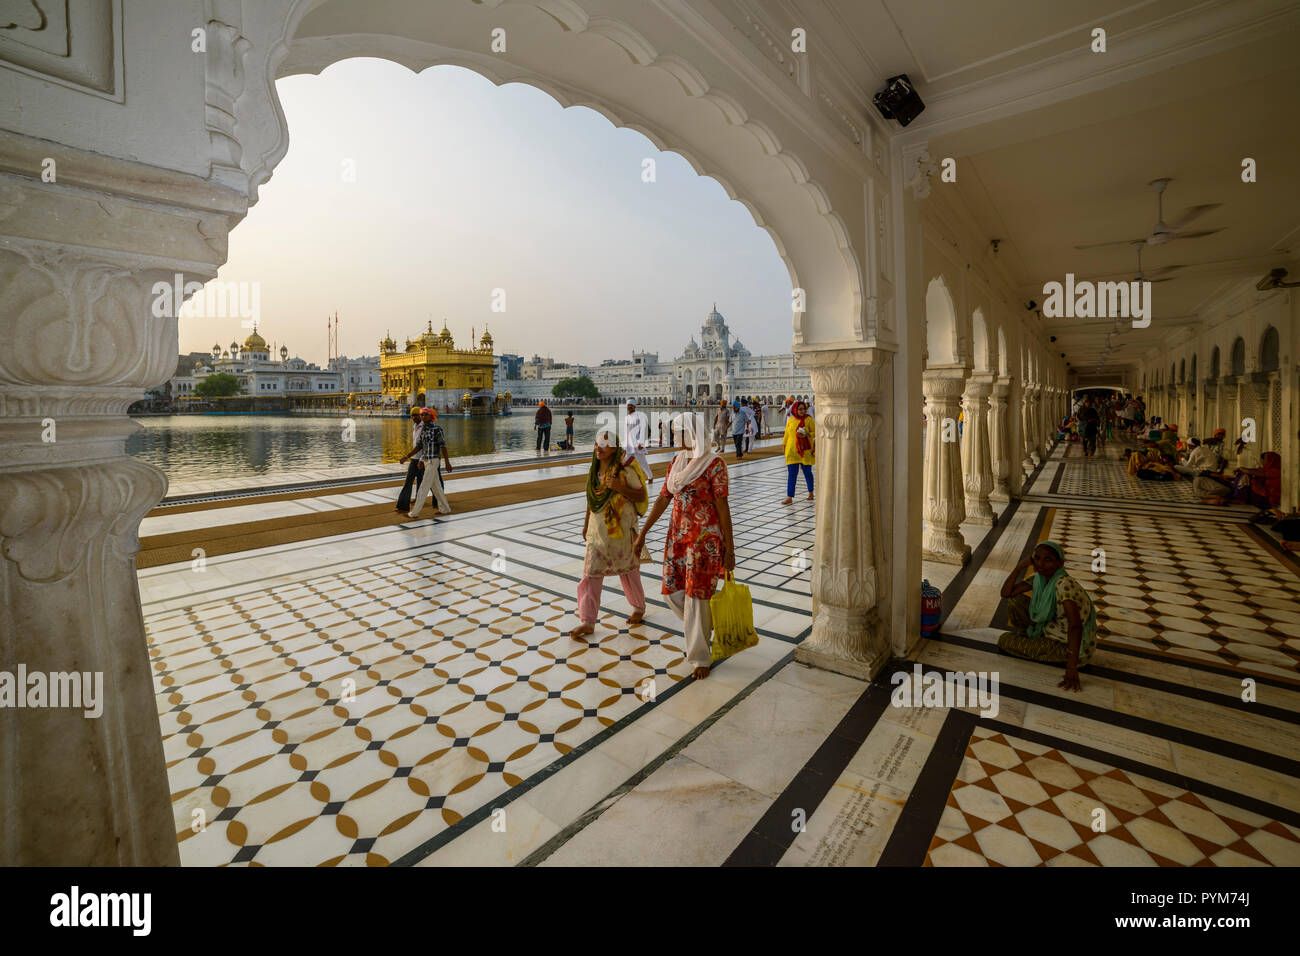 L'Harmandir Sahib, Tempio d'oro, è il più importante Gurdwara Sikh e fu costruito dal quinto Guru sikh, Guru Arjan, nel XVI secolo. Vedere Foto Stock